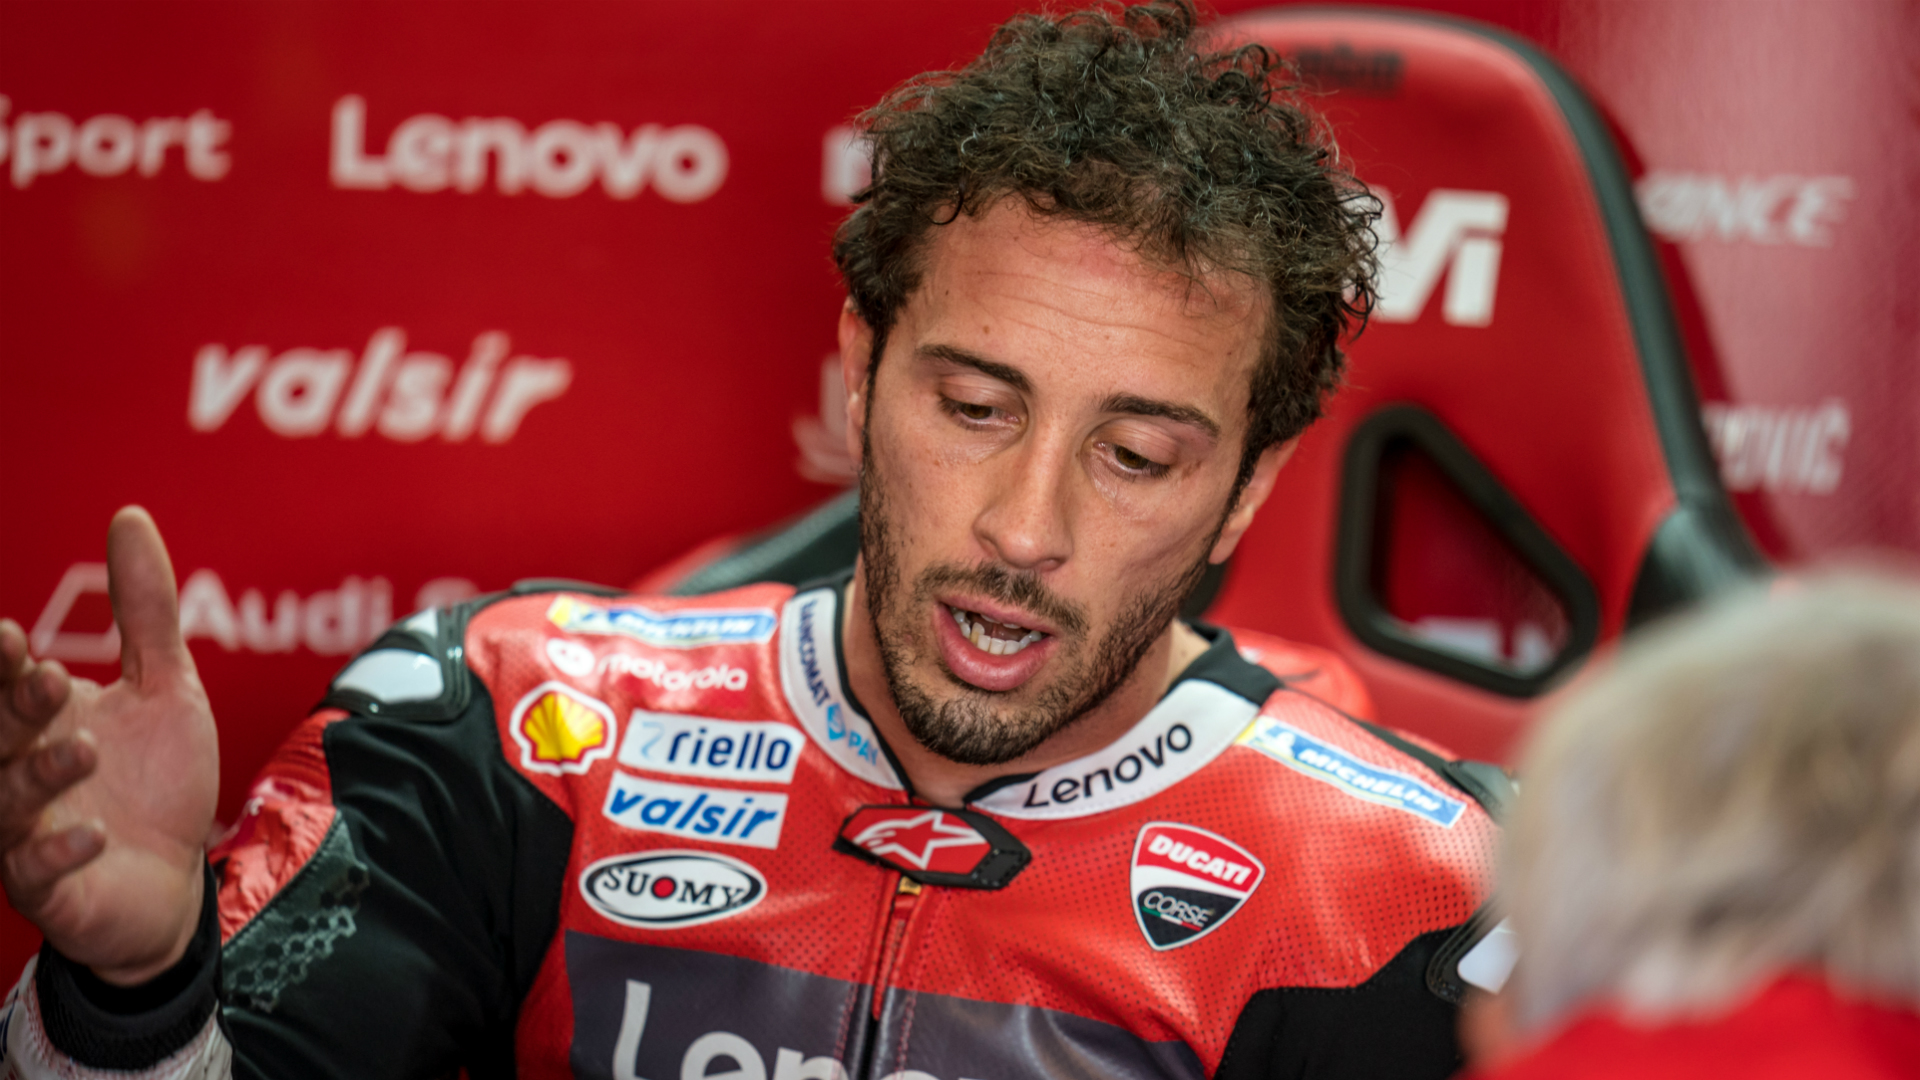 Ducati will struggle to get their bikes into Q2 at the Aragon Grand Prix, according to factory rider Andrea Dovizioso.